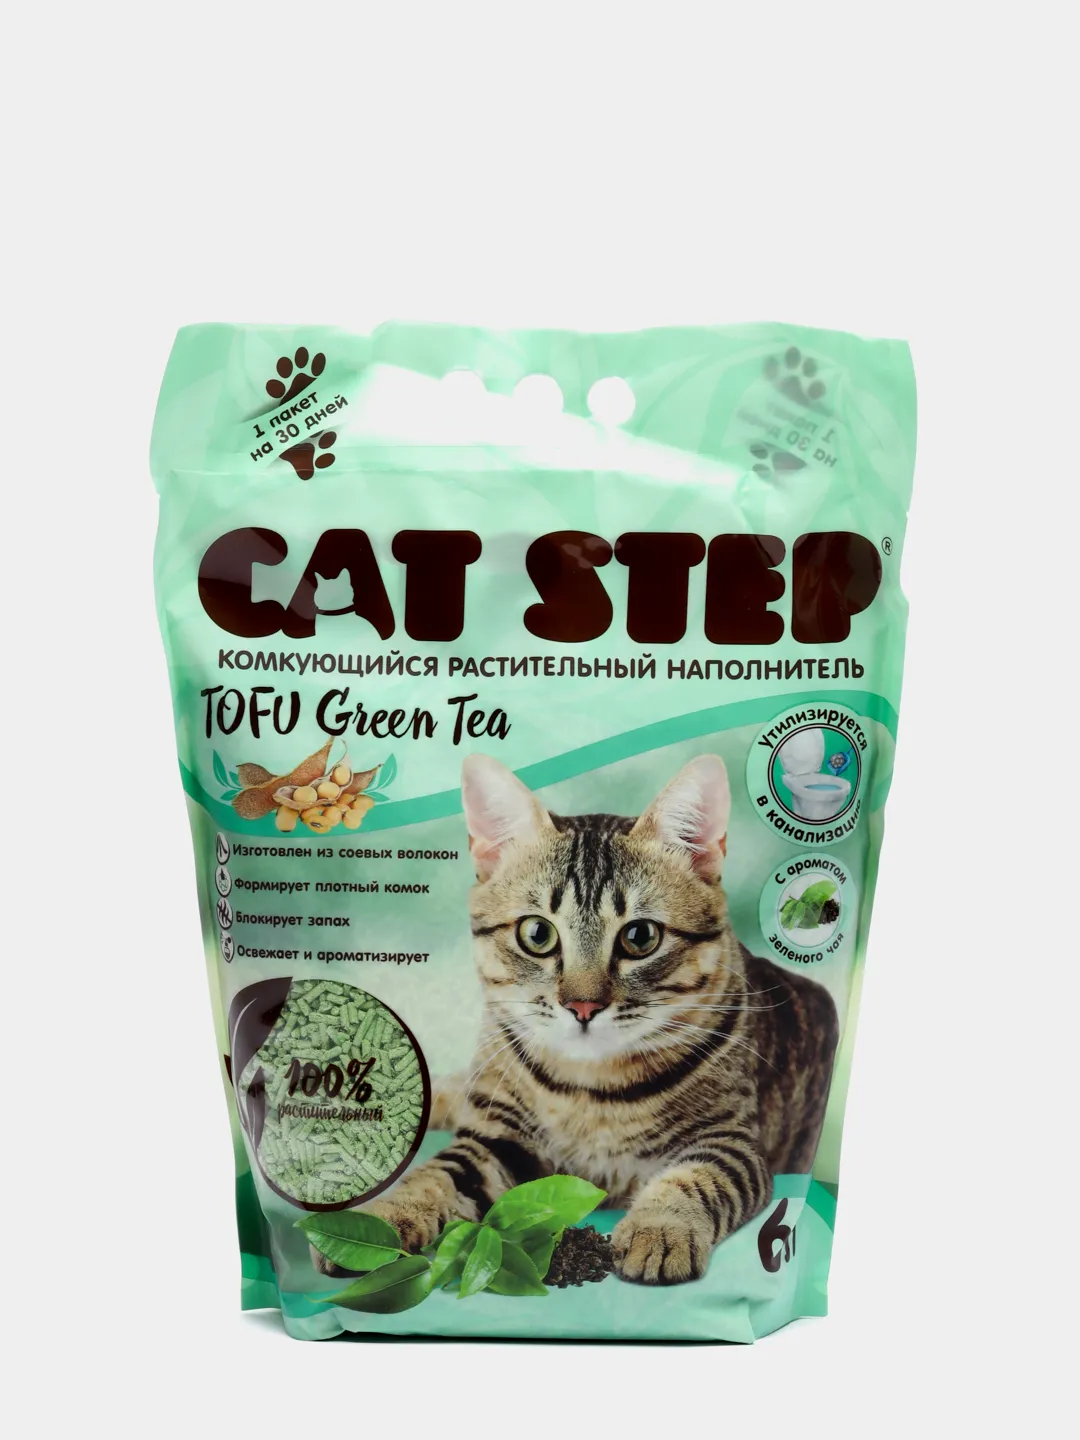 Cat Step Tofu 6 л. Cat Step наполнитель соевый. Cat Step наполнитель Tofu Green Tea комкующийся 4л. Наполнитель для кошачьего соевый тофу Green Tea Cat Step.